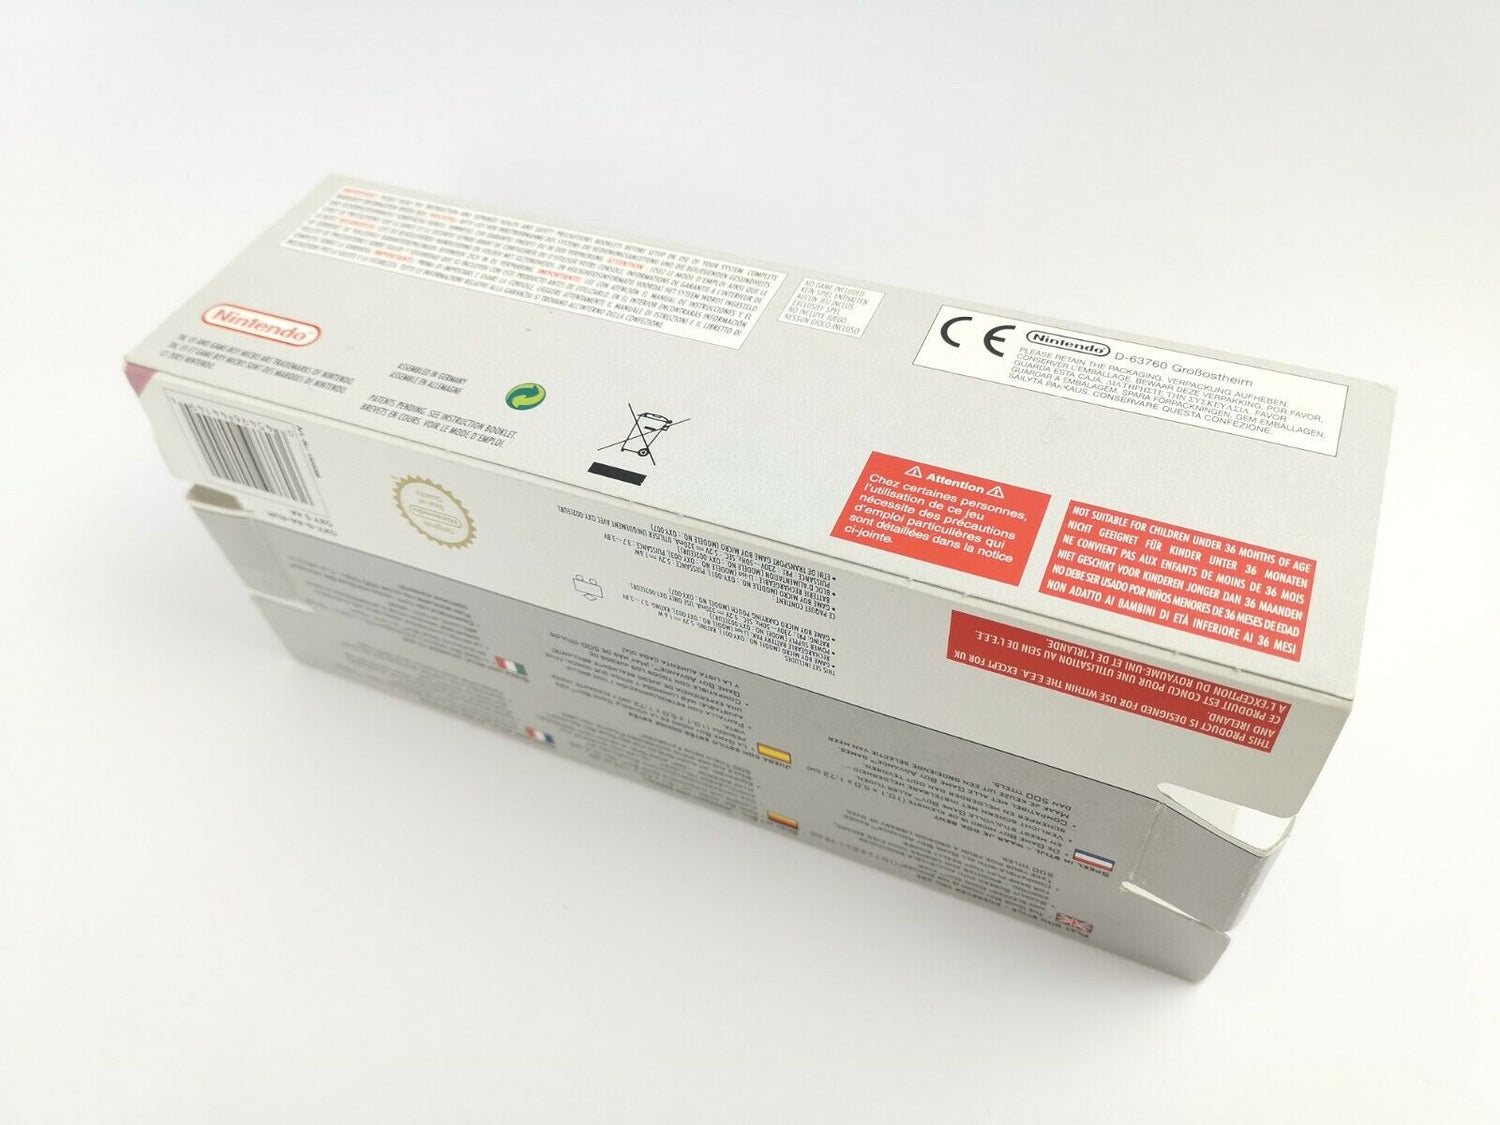 Nintendo Gameboy Micro Console 